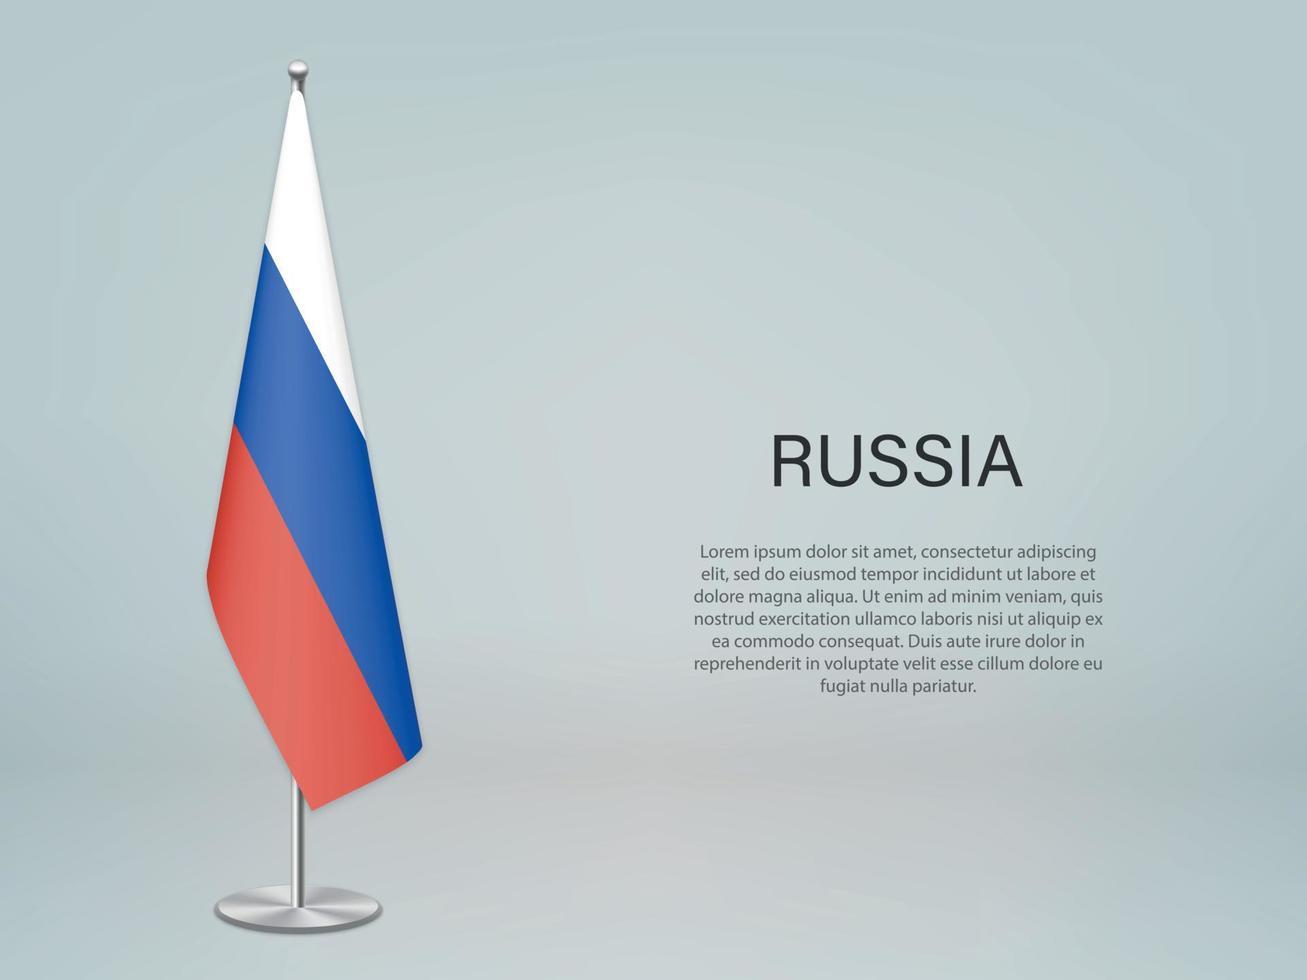 rusia colgando la bandera en el stand. plantilla para banner de conferencia vector